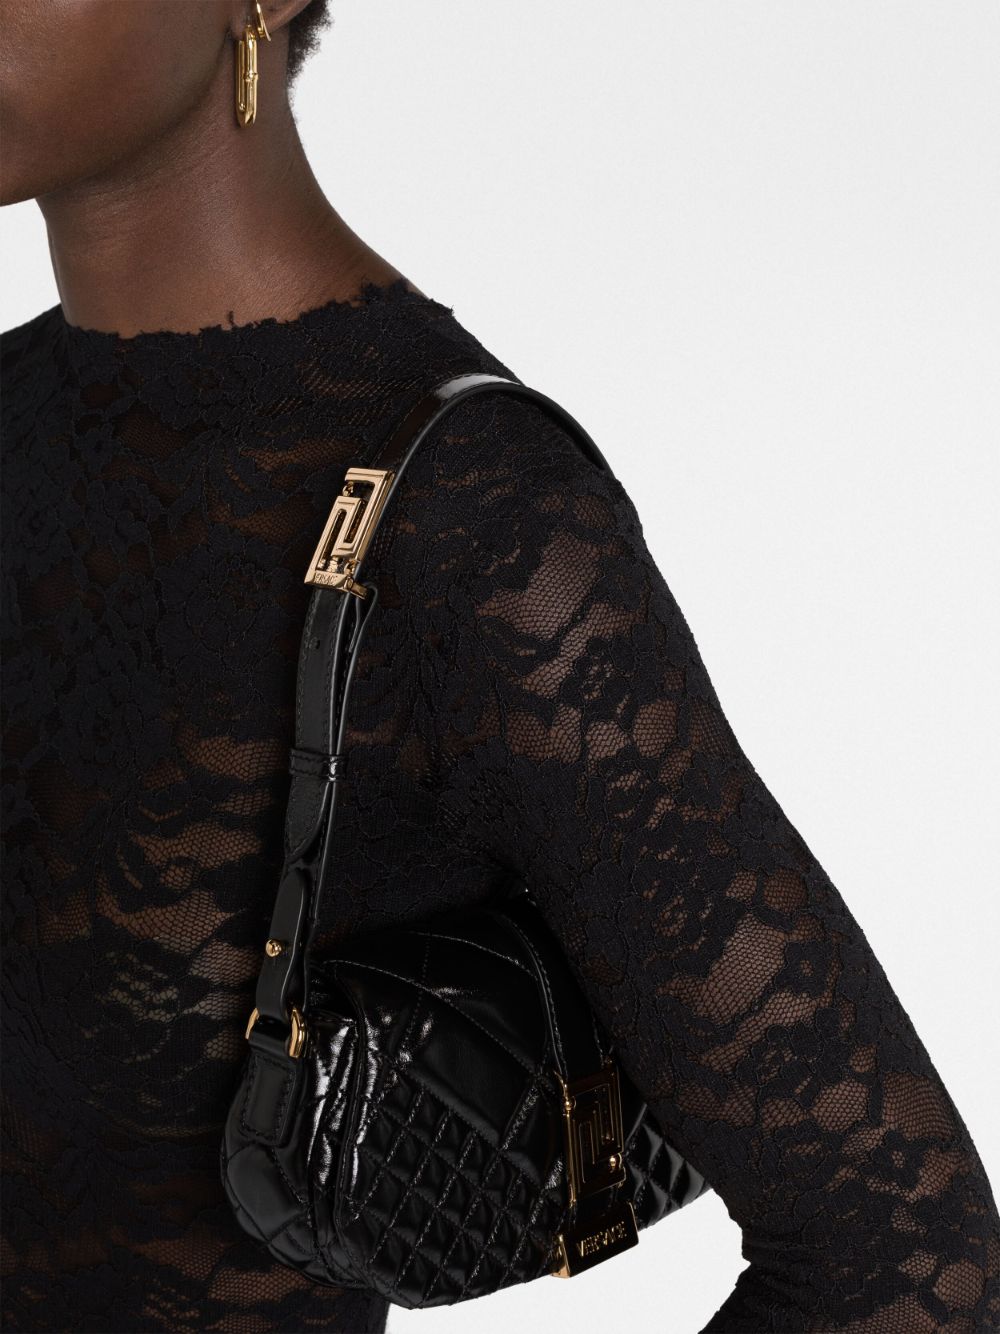 Versace Greca Goddess Mini Shoulder Bag for Women